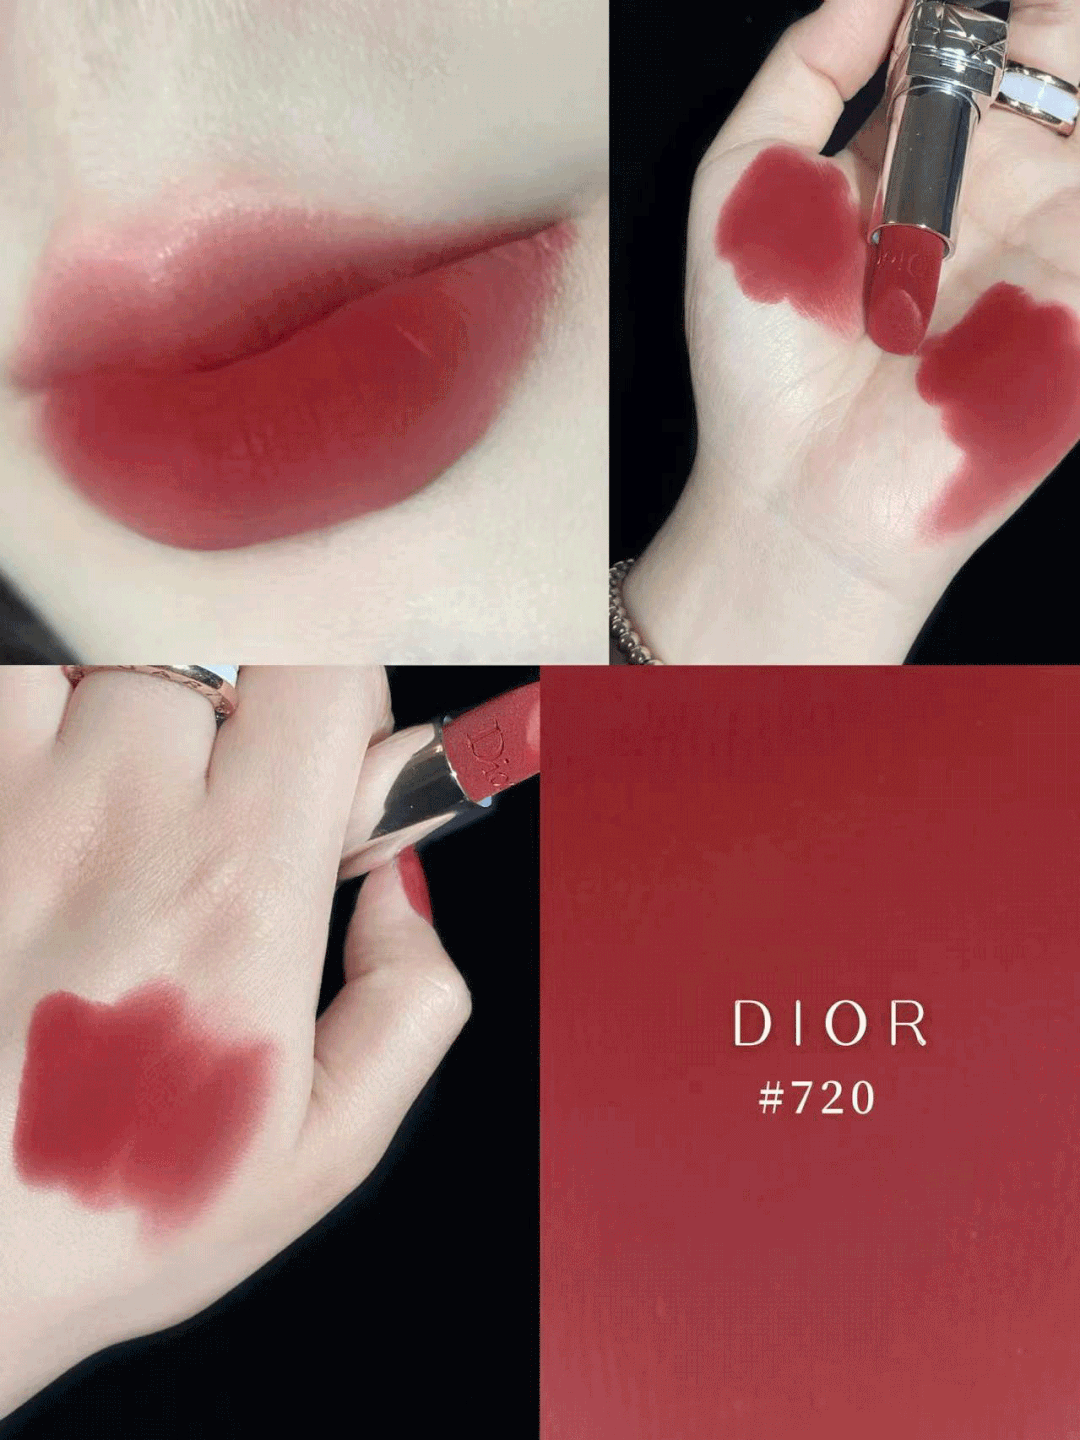 dior限定款口红套装,4大热门色号一键全搞定,一抹提气色,衬肤色,气质